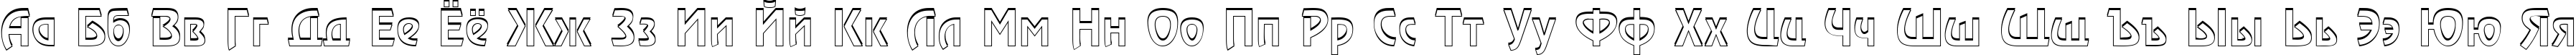 Пример написания русского алфавита шрифтом a_RewinderDemiSh